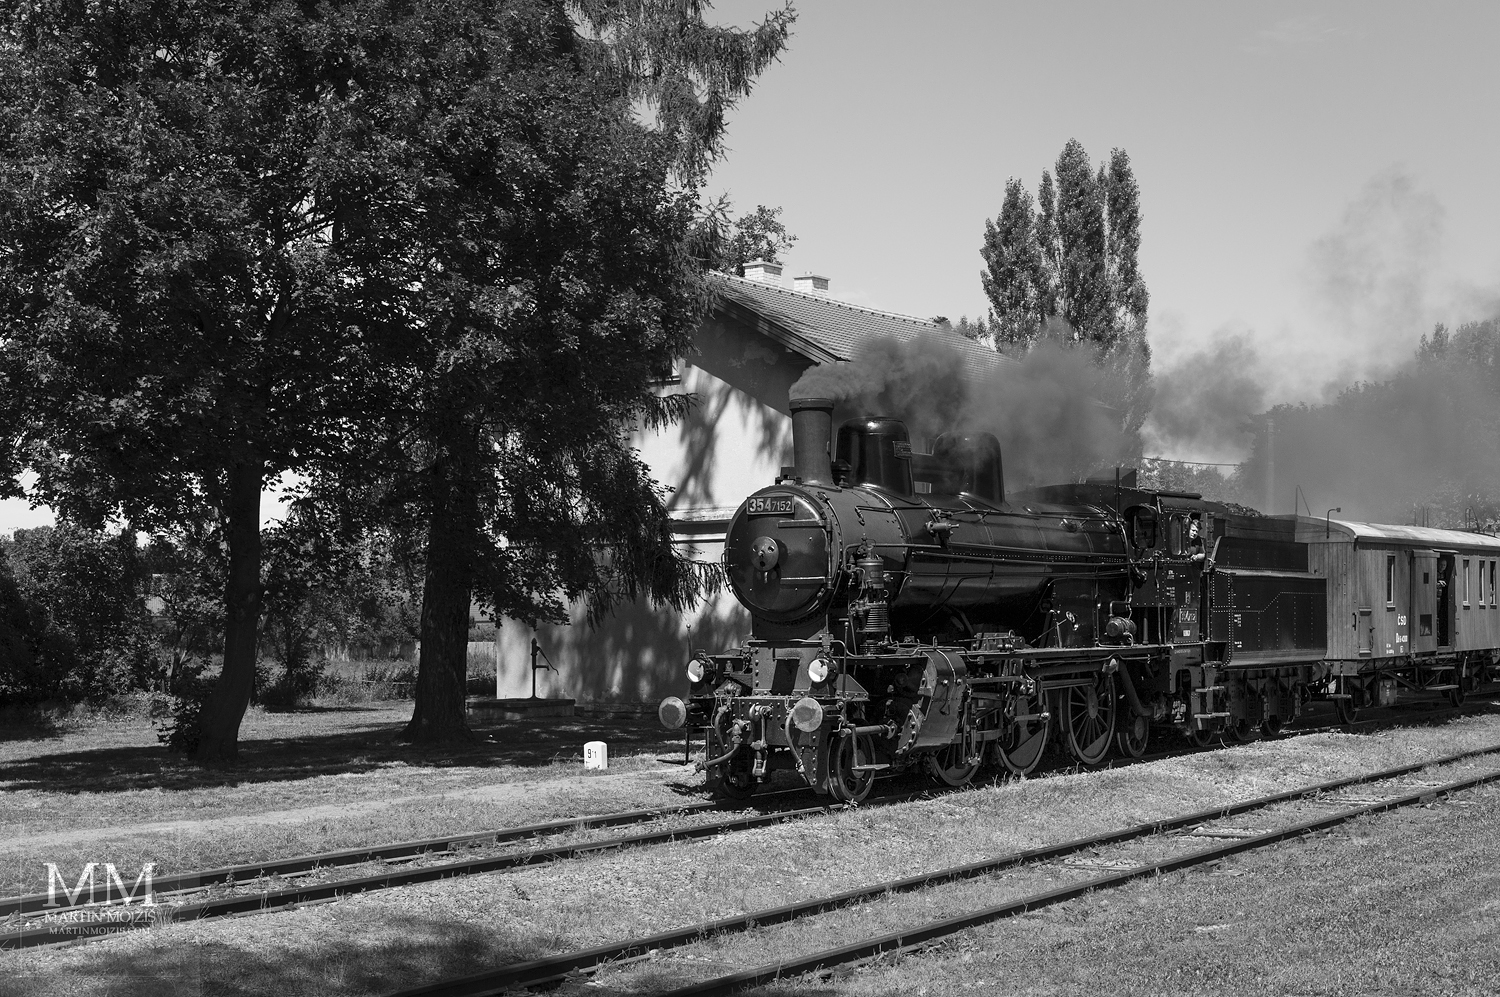 Černobílá fotografie parní lokomotivy. Velkoformátová umělecká fotografie. Martin Mojžíš.